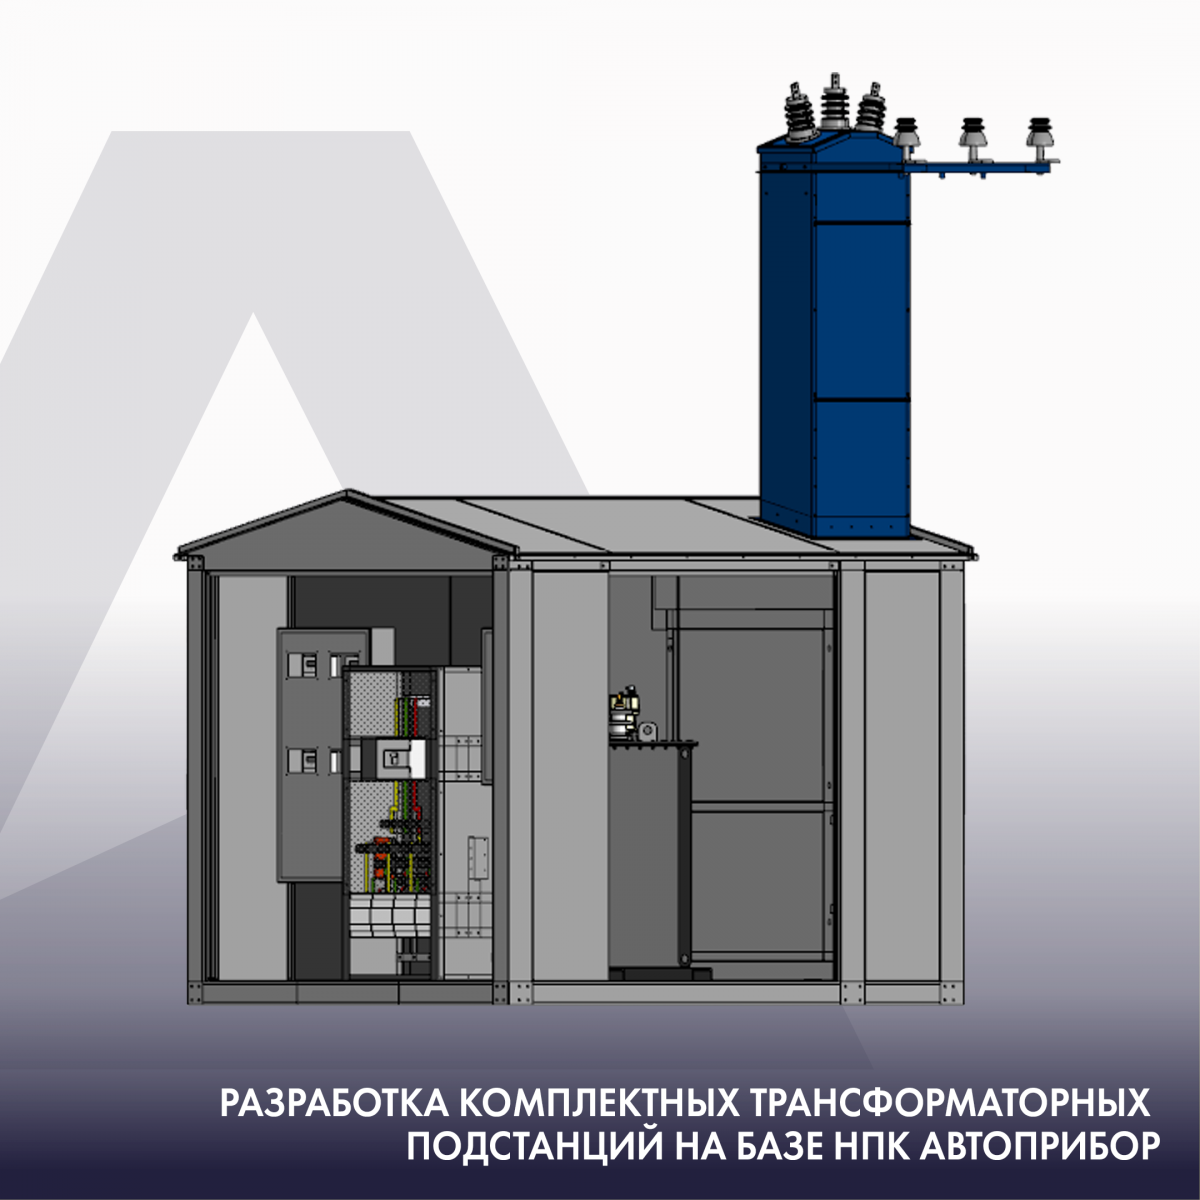 Разработка комплектных трансформаторных подстанций на базе НПК АВТОПРИБОР